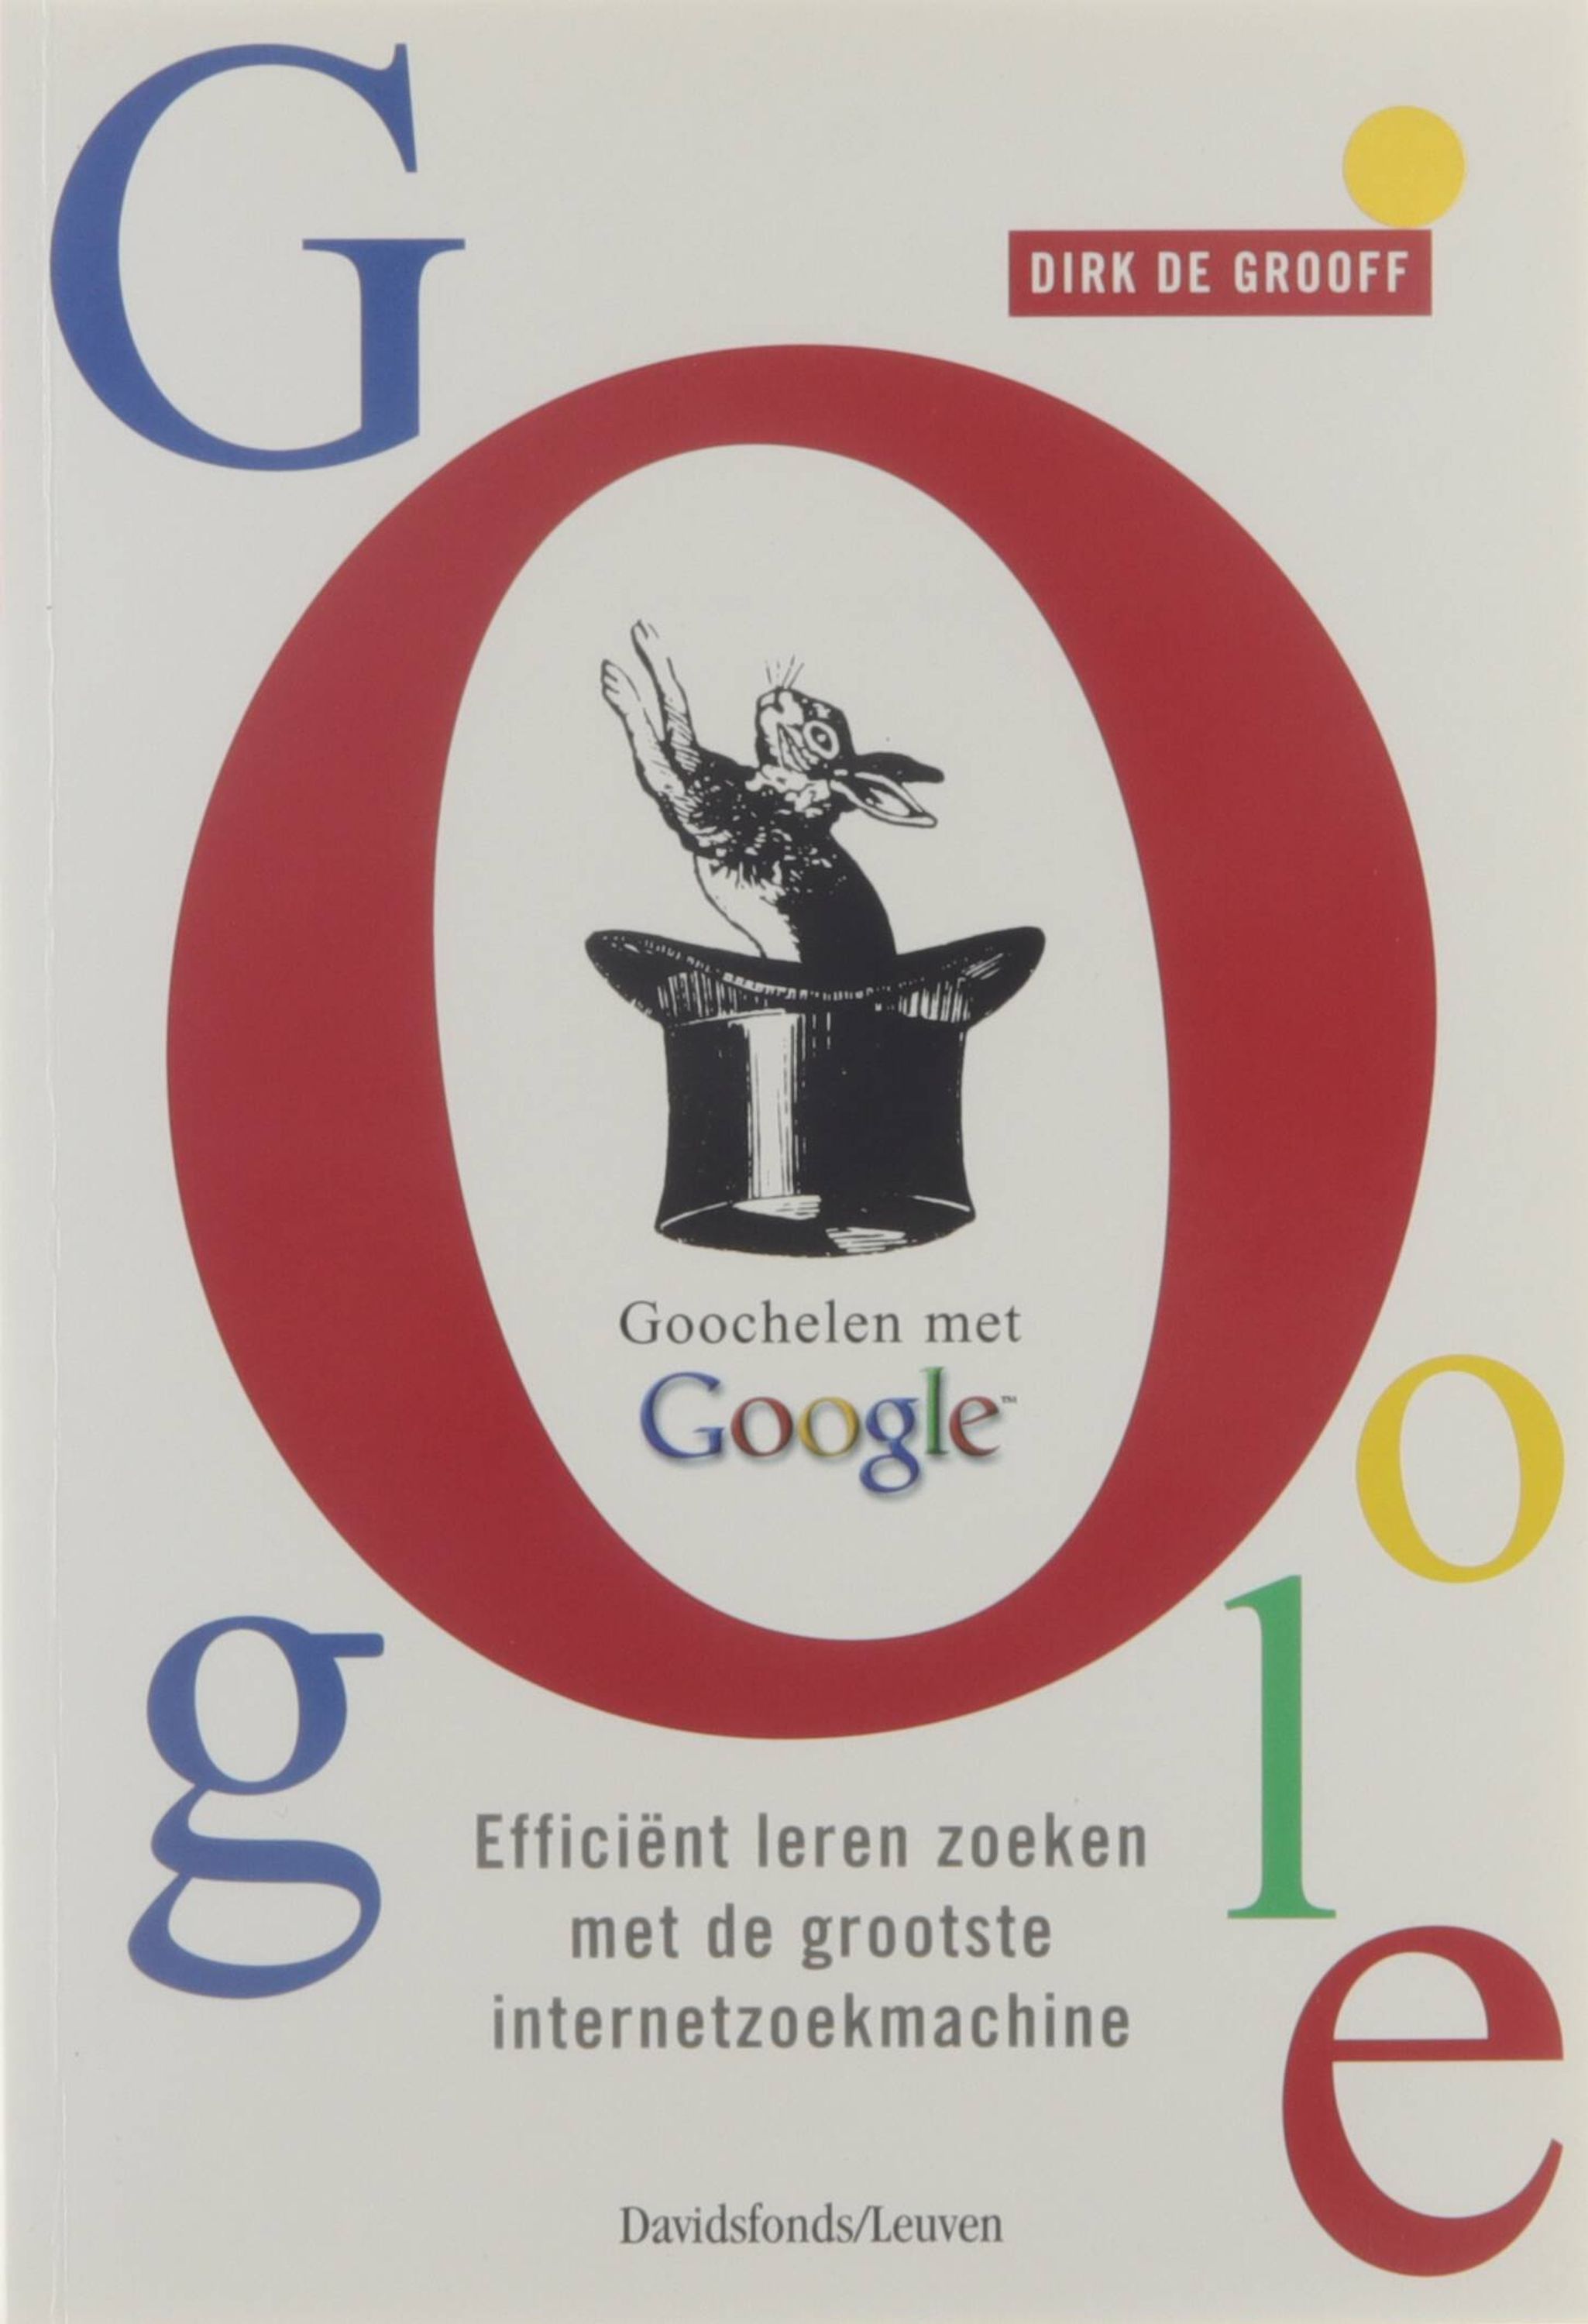 Goochelen met Google - efficiënt leren zoeken met de grootste internetzoekmachine - Dirk De Grooff